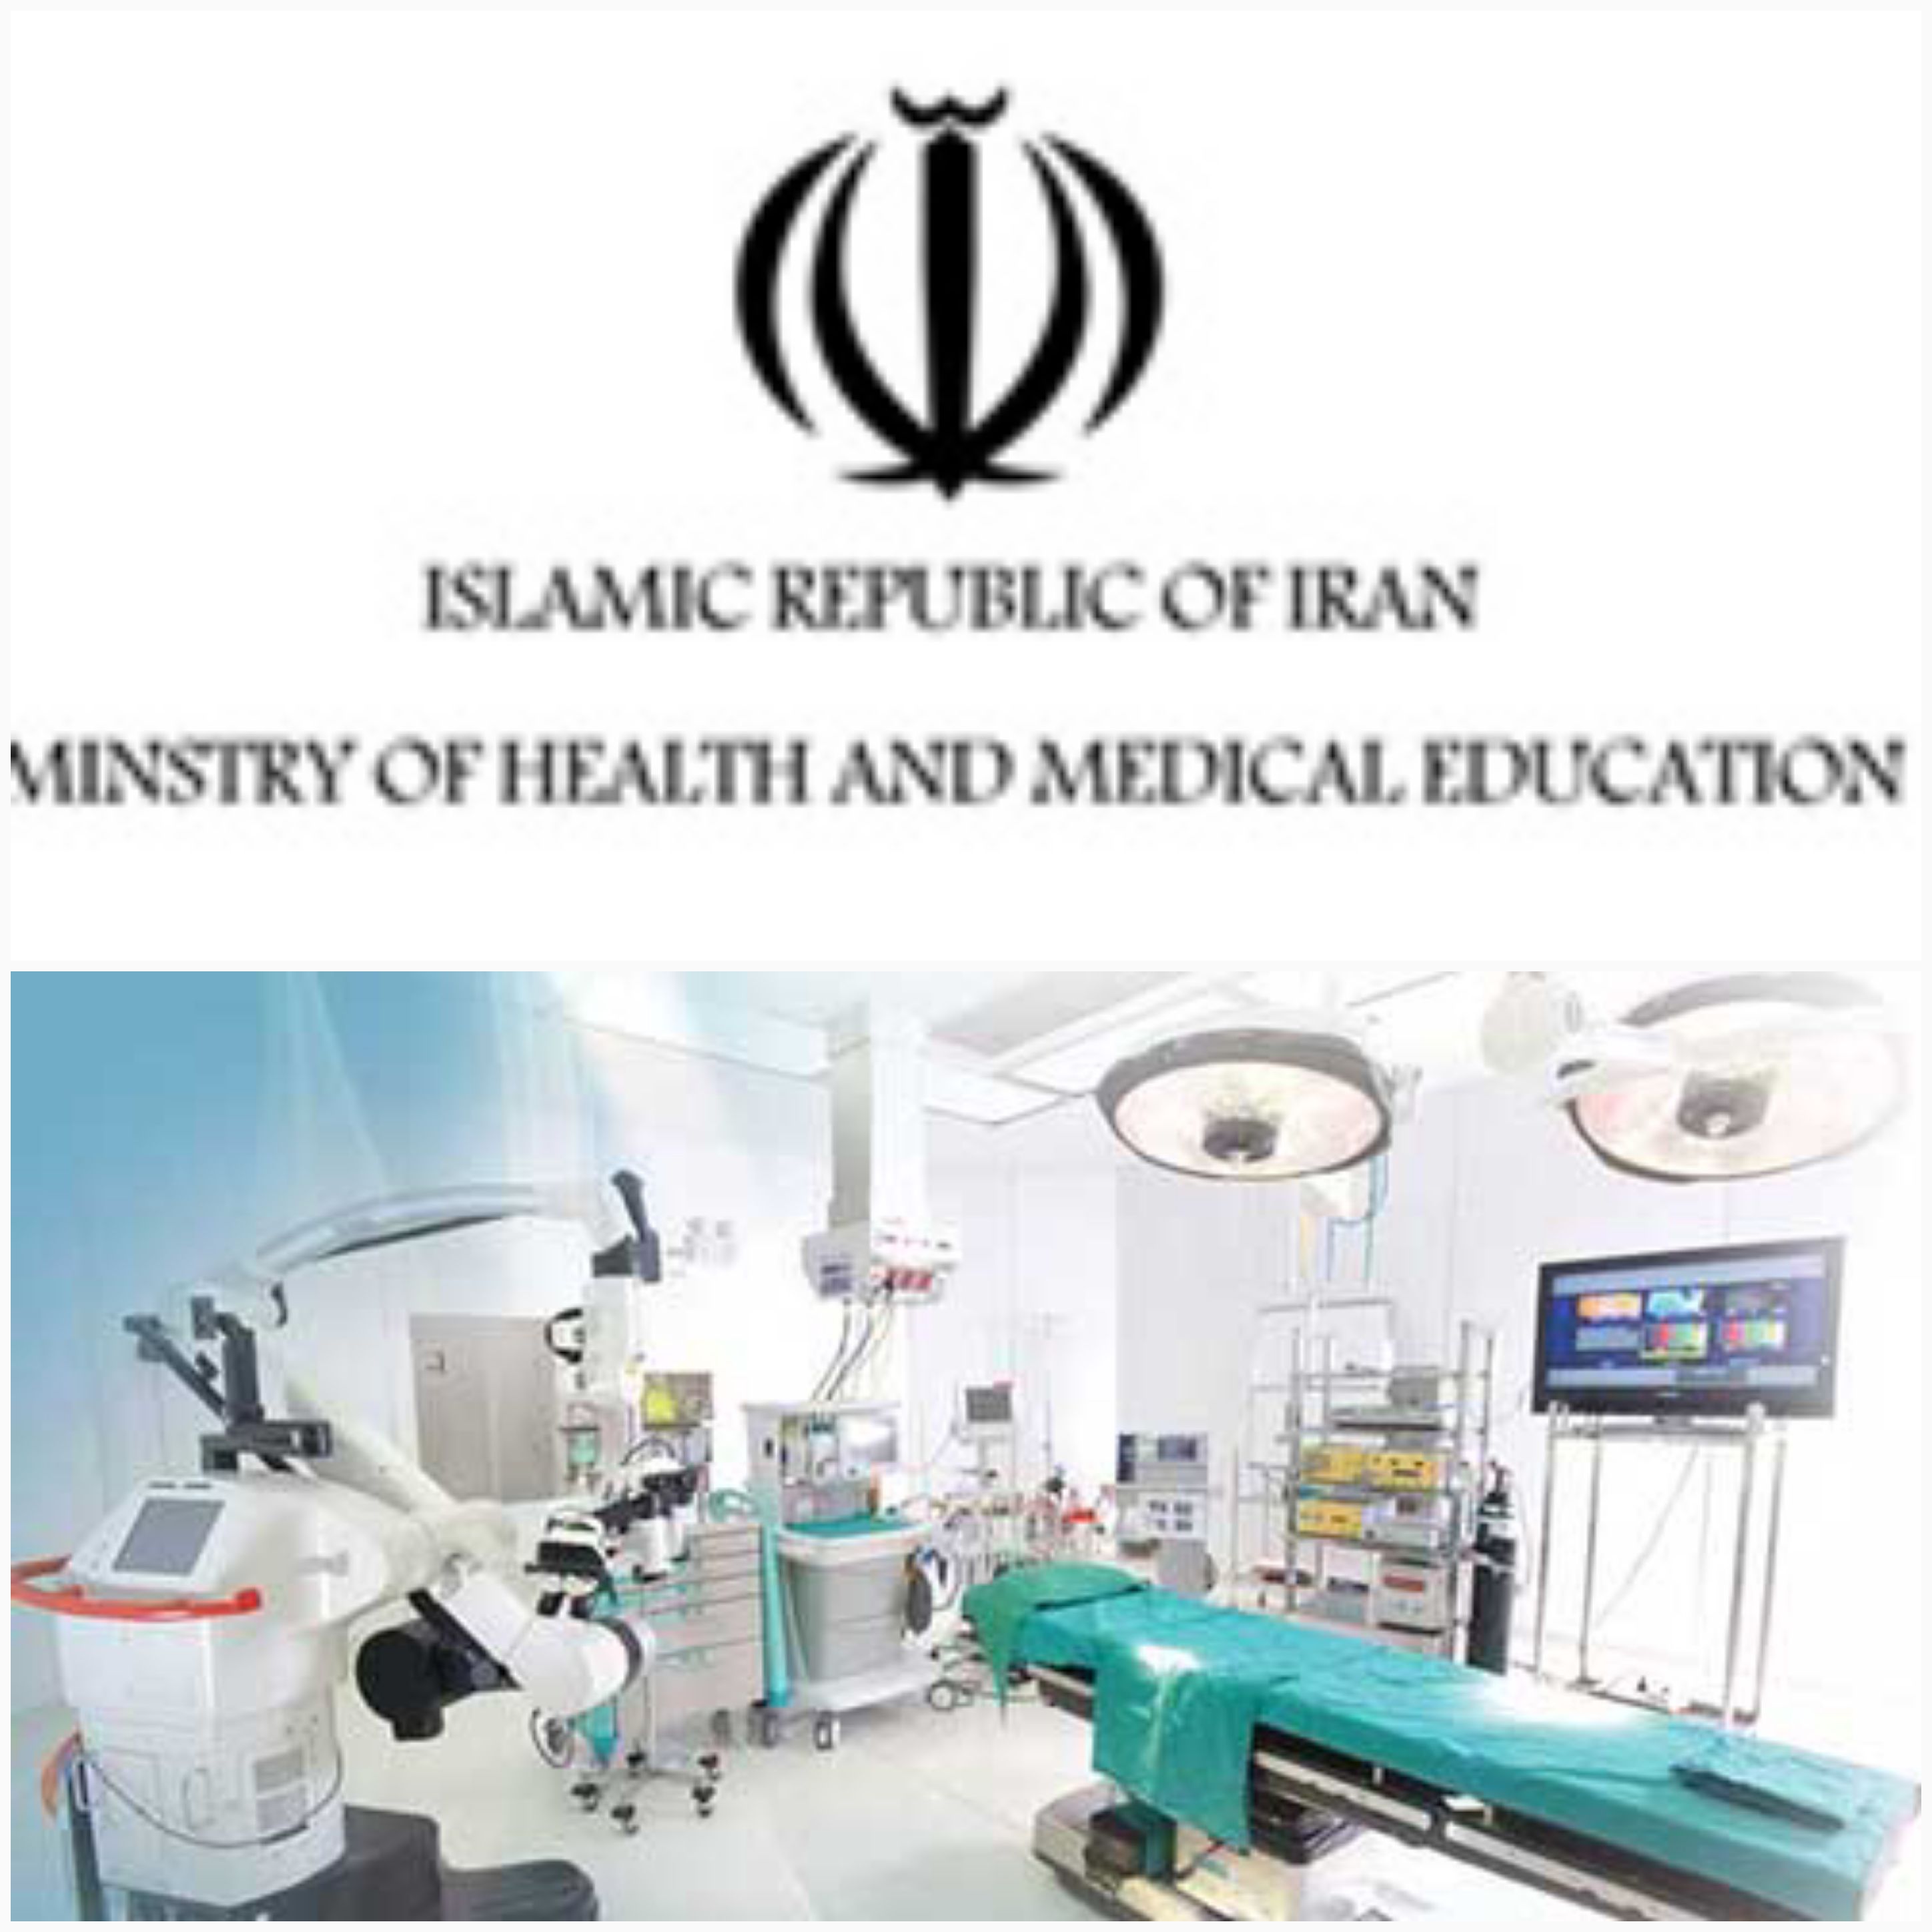 نسخه لاتین دستورالعمل ها و ضوابط رگولاتوری تجهیزات پزشکی در ایران